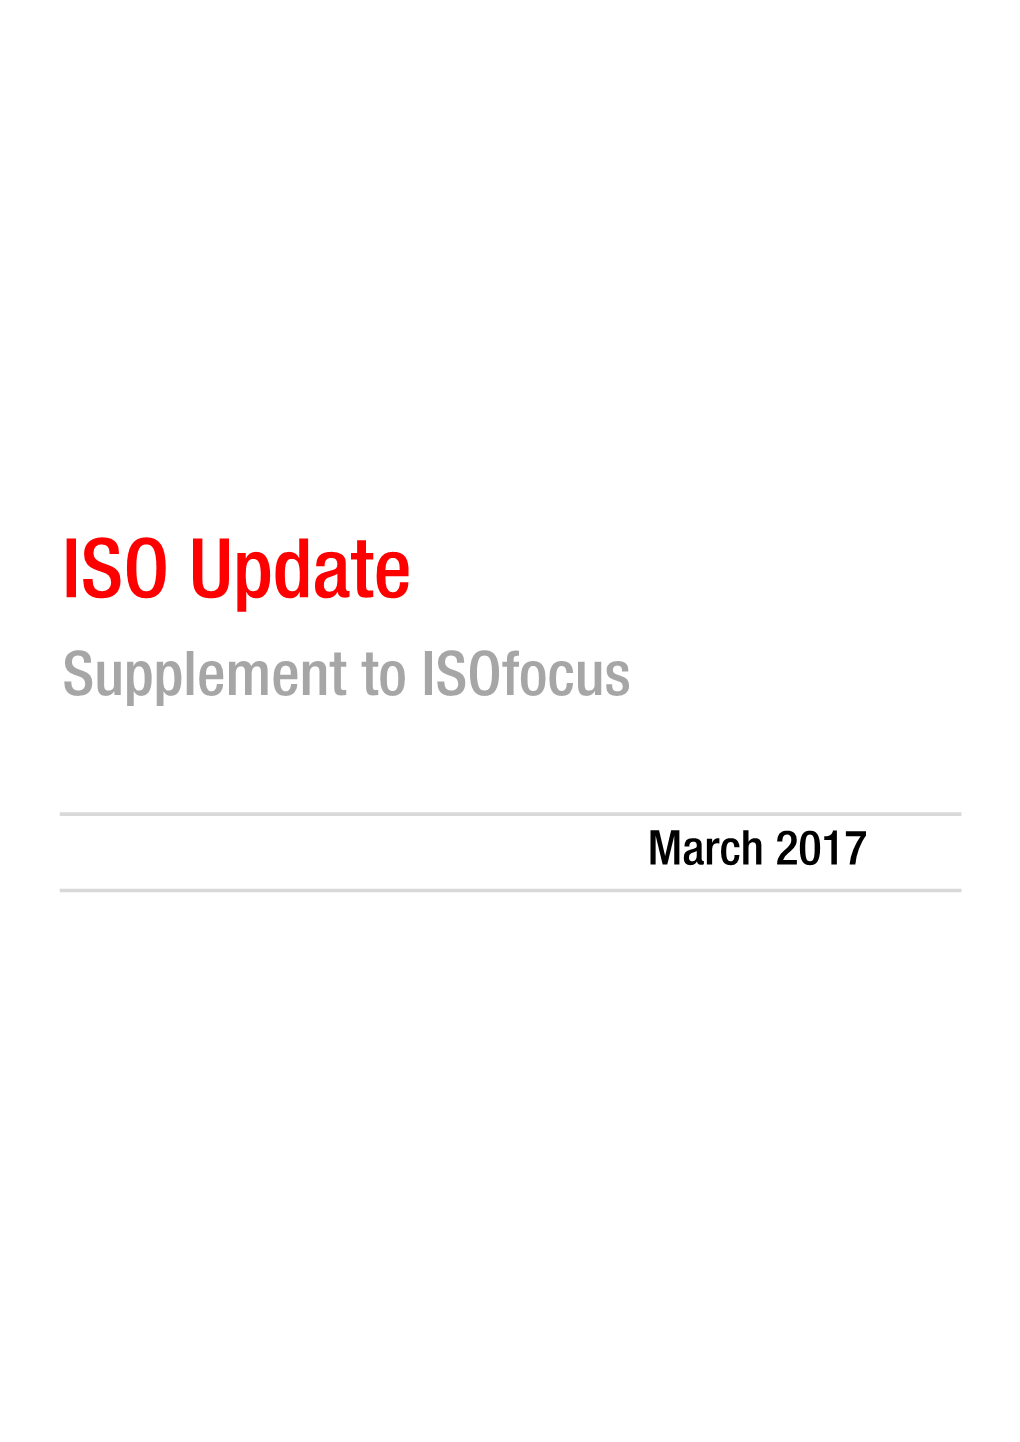 ISO Update Supplement to Isofocus